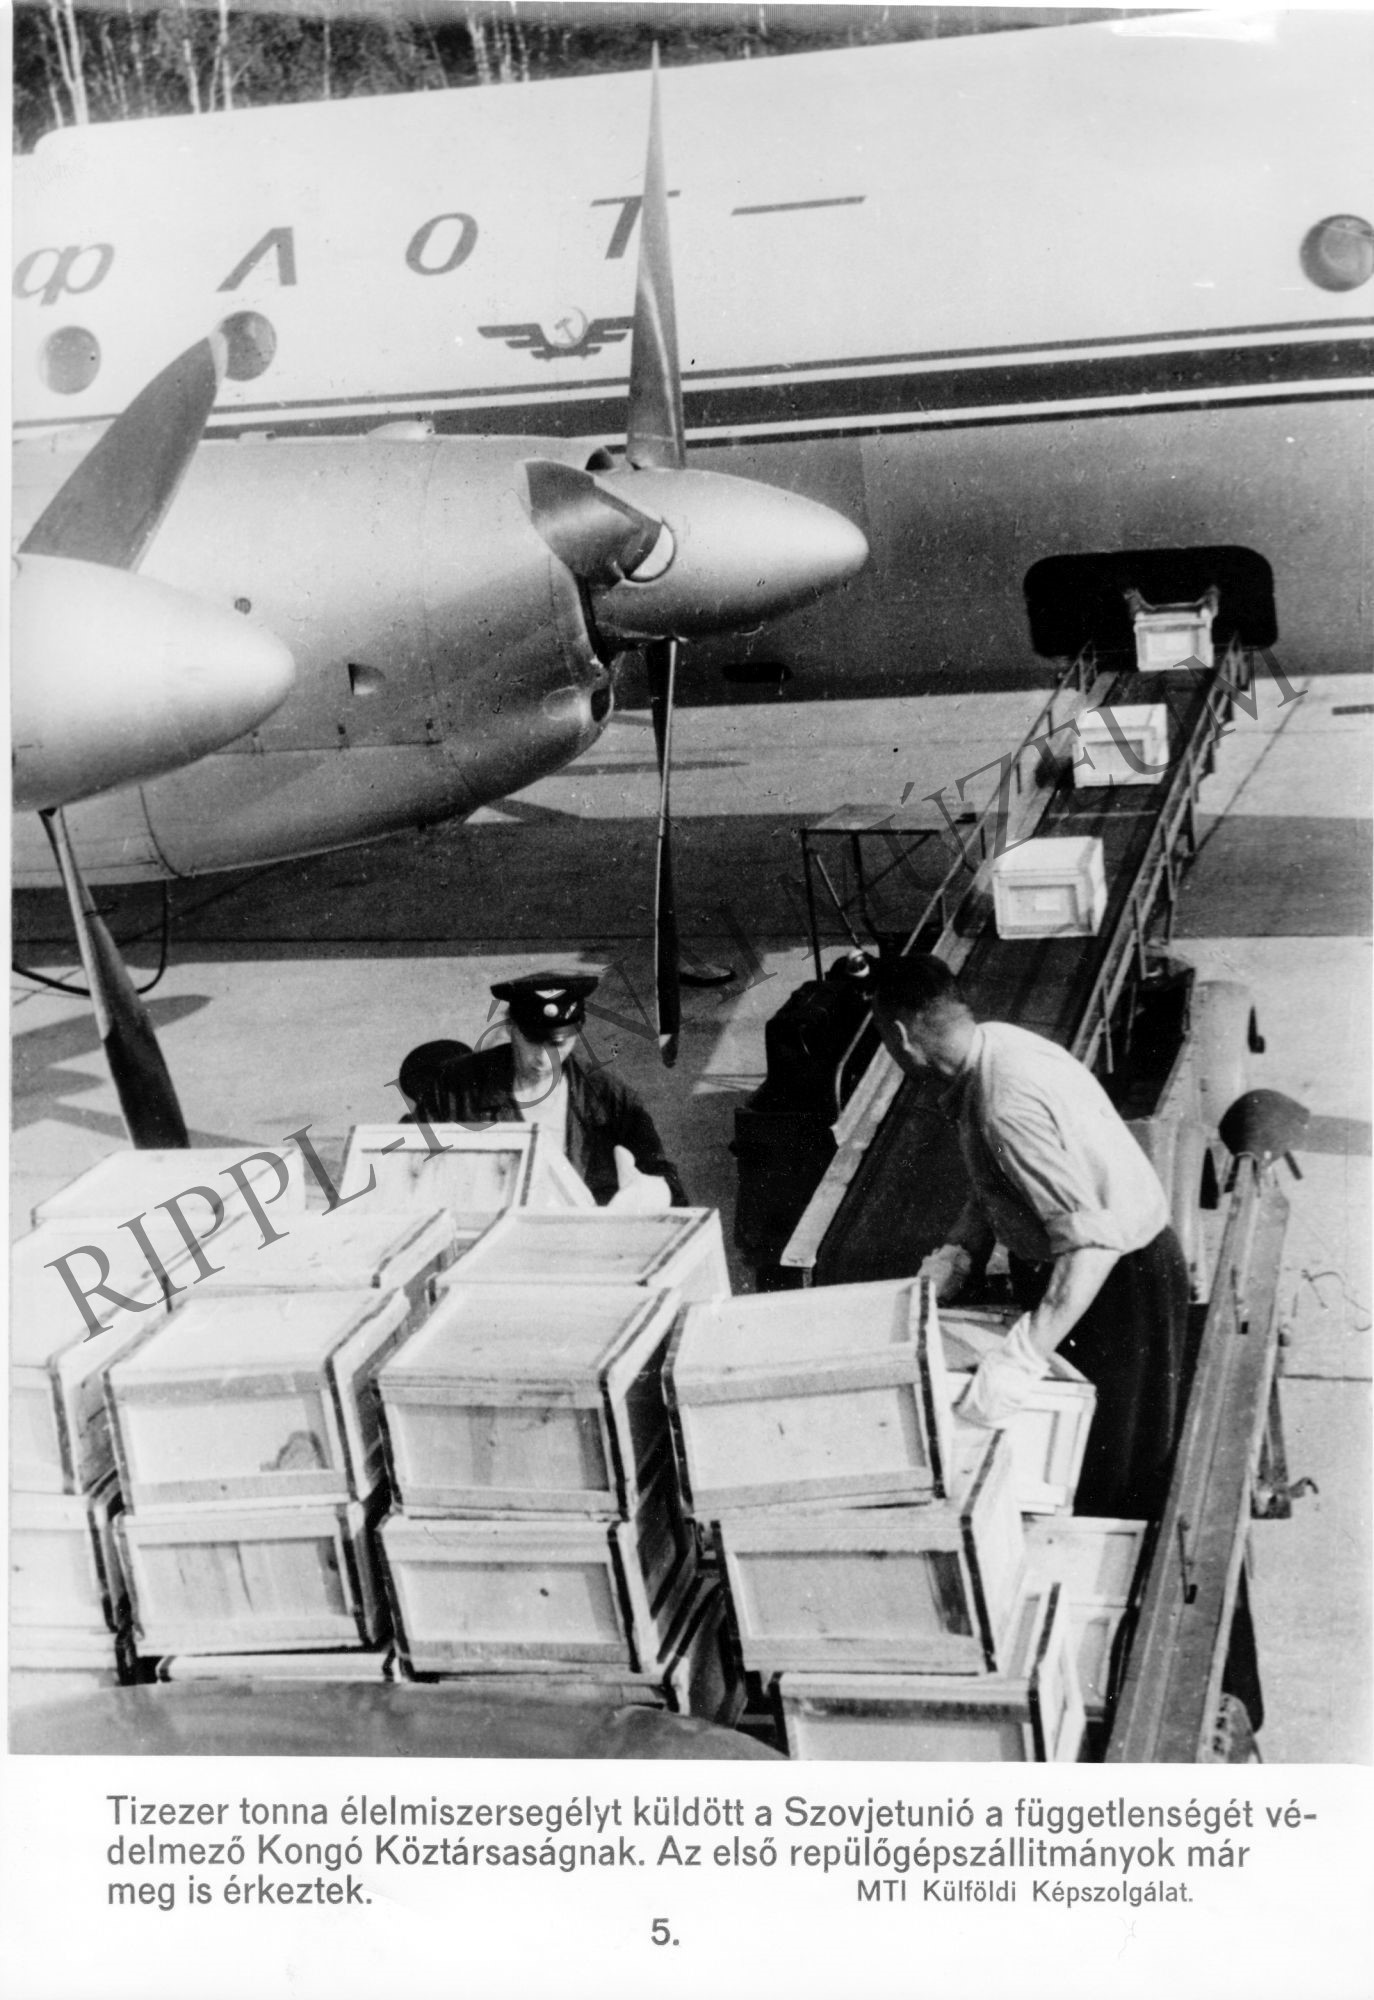 A szovjet élelmiszersegély repülőgépen érkezik a Kongói Köztársaságnak (Rippl-Rónai Múzeum CC BY-NC-SA)